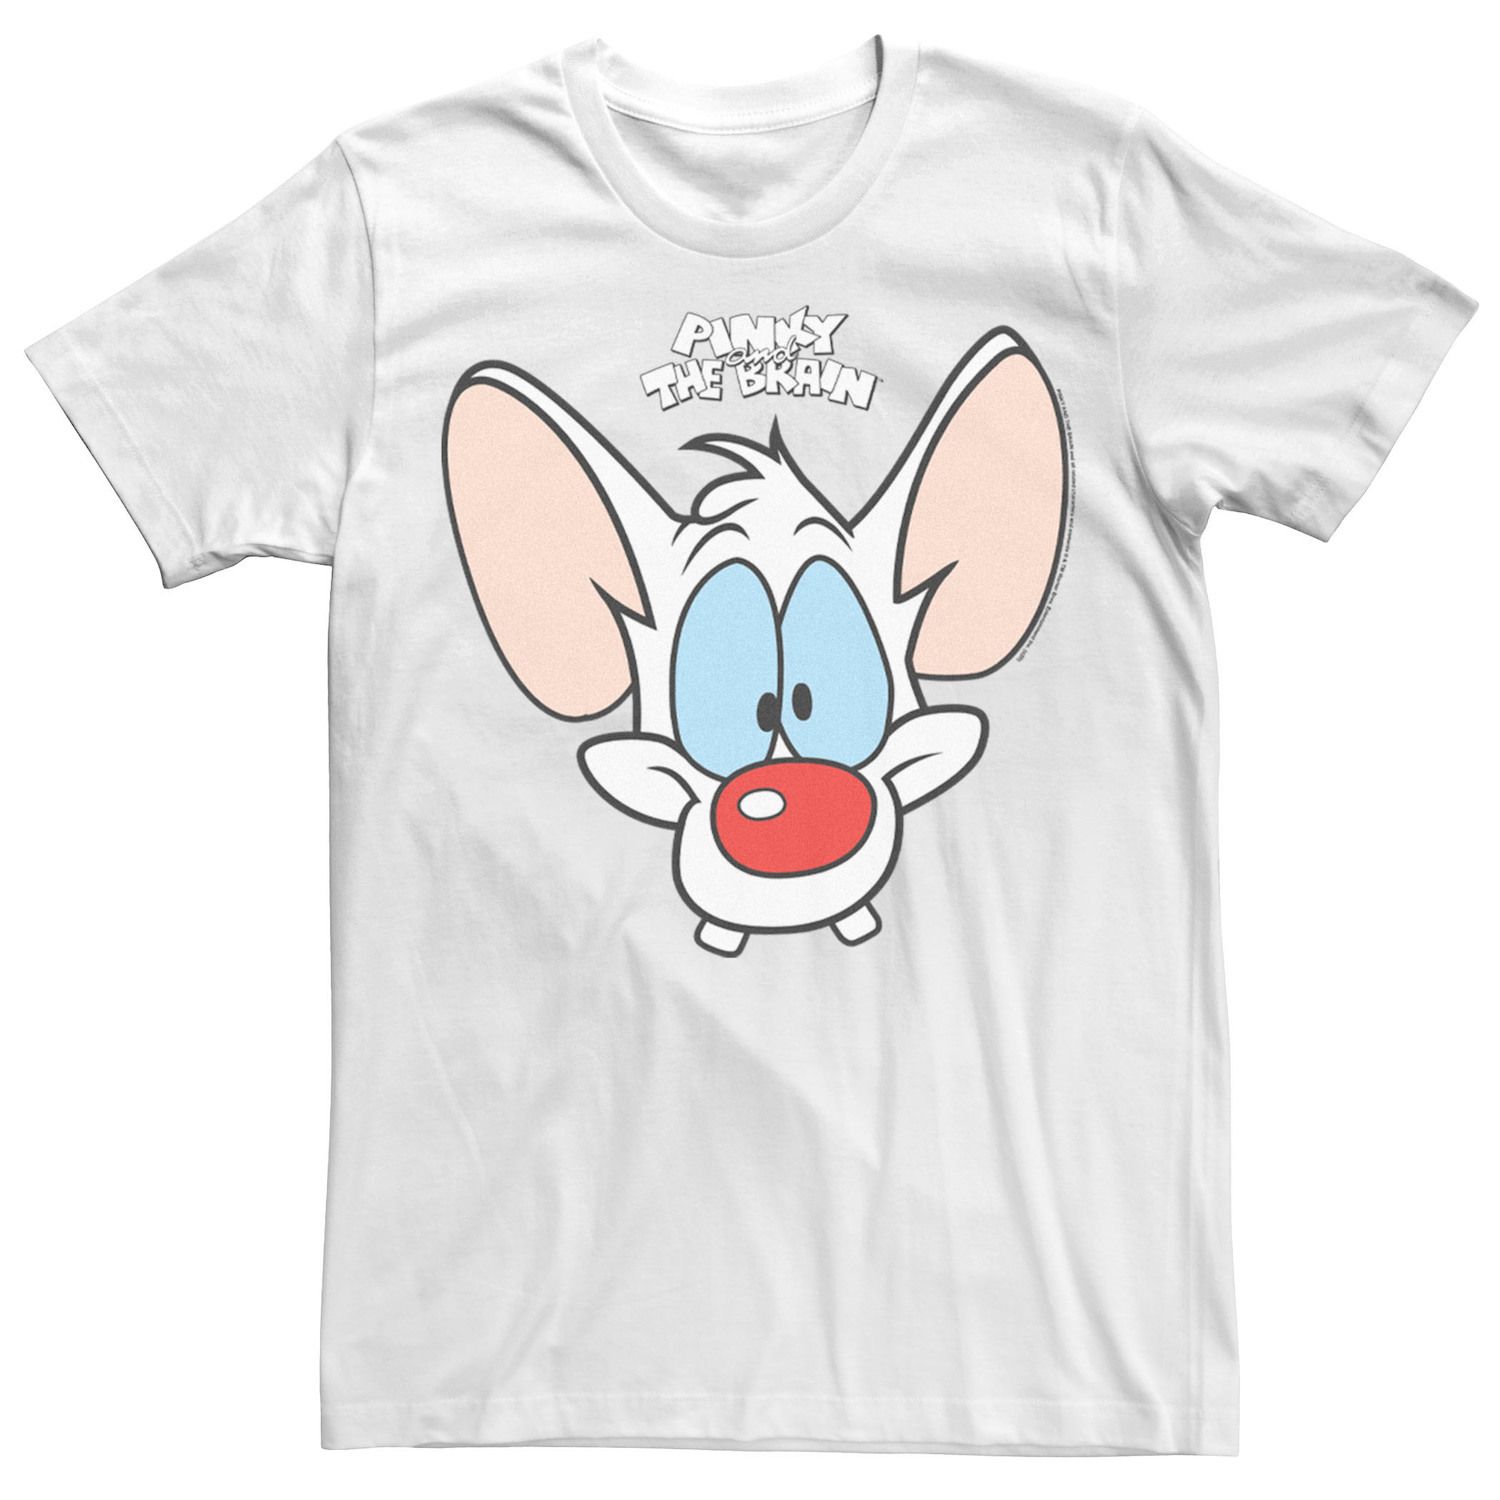 Мужская футболка Pinky And The Brain Pinky с большим лицом Licensed Character